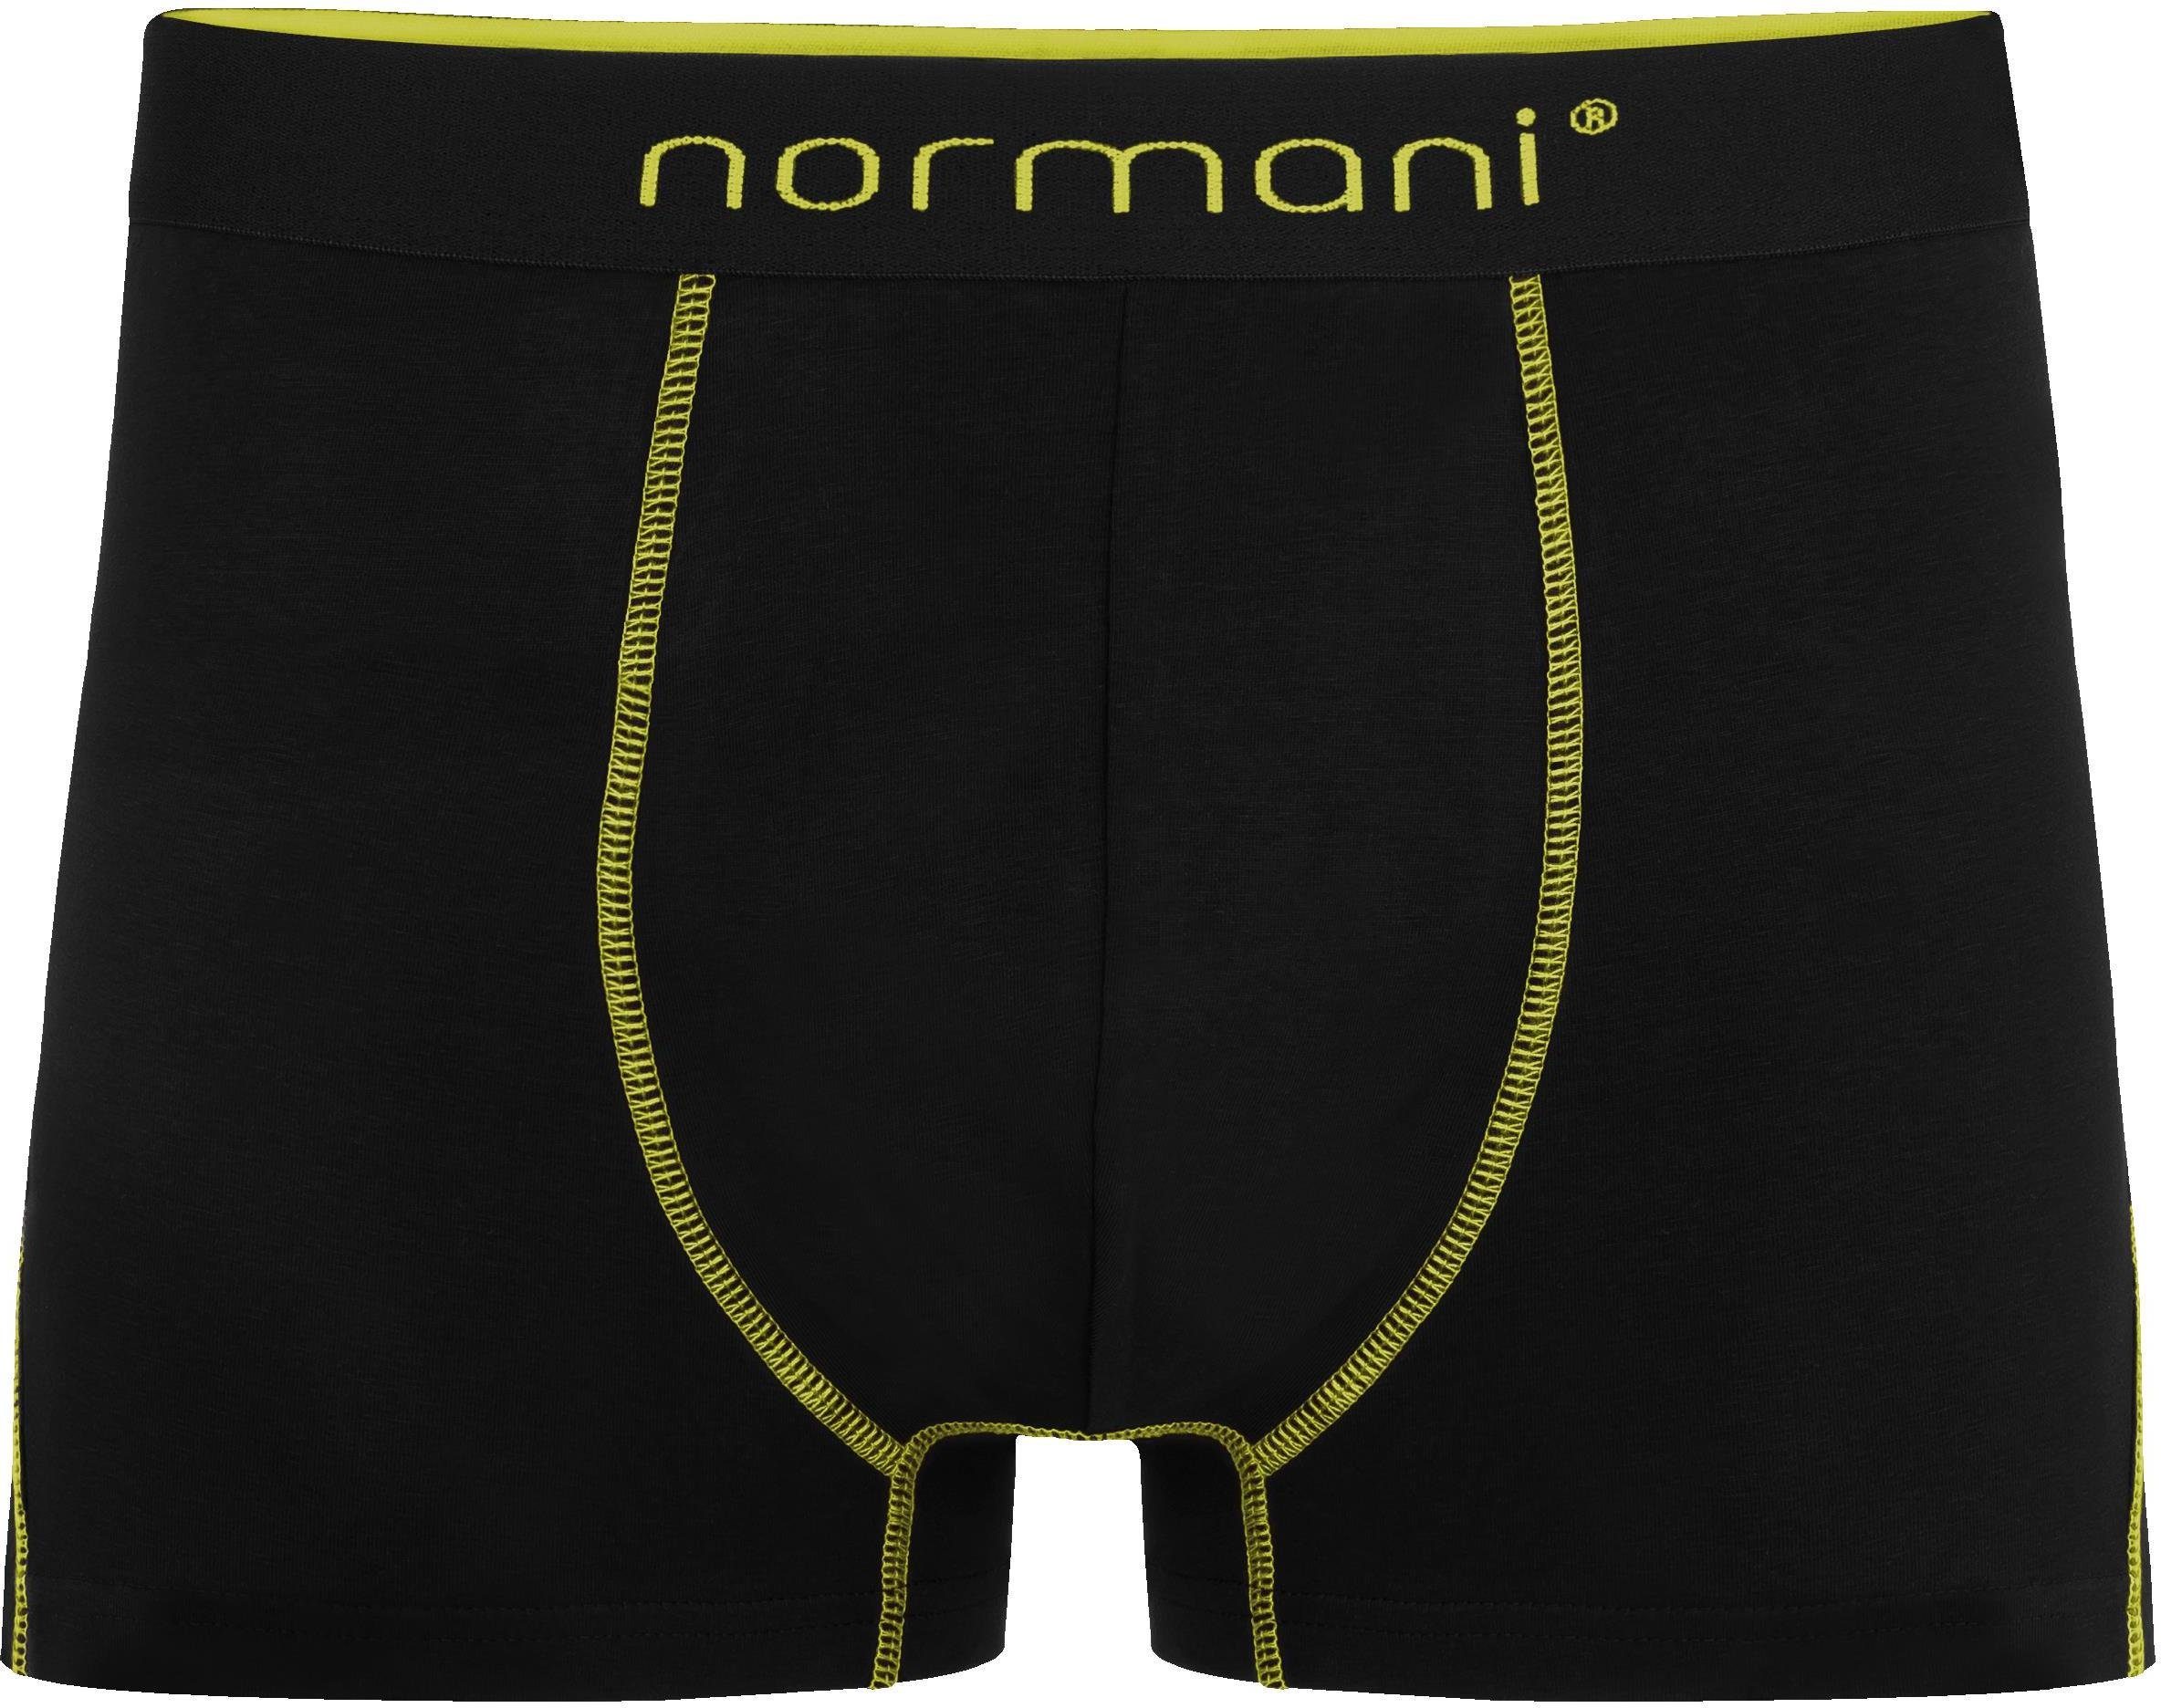 12 Herren für Gelb Baumwolle aus normani x Männer Boxershorts Baumwoll-Boxershorts Unterhose atmungsaktiver